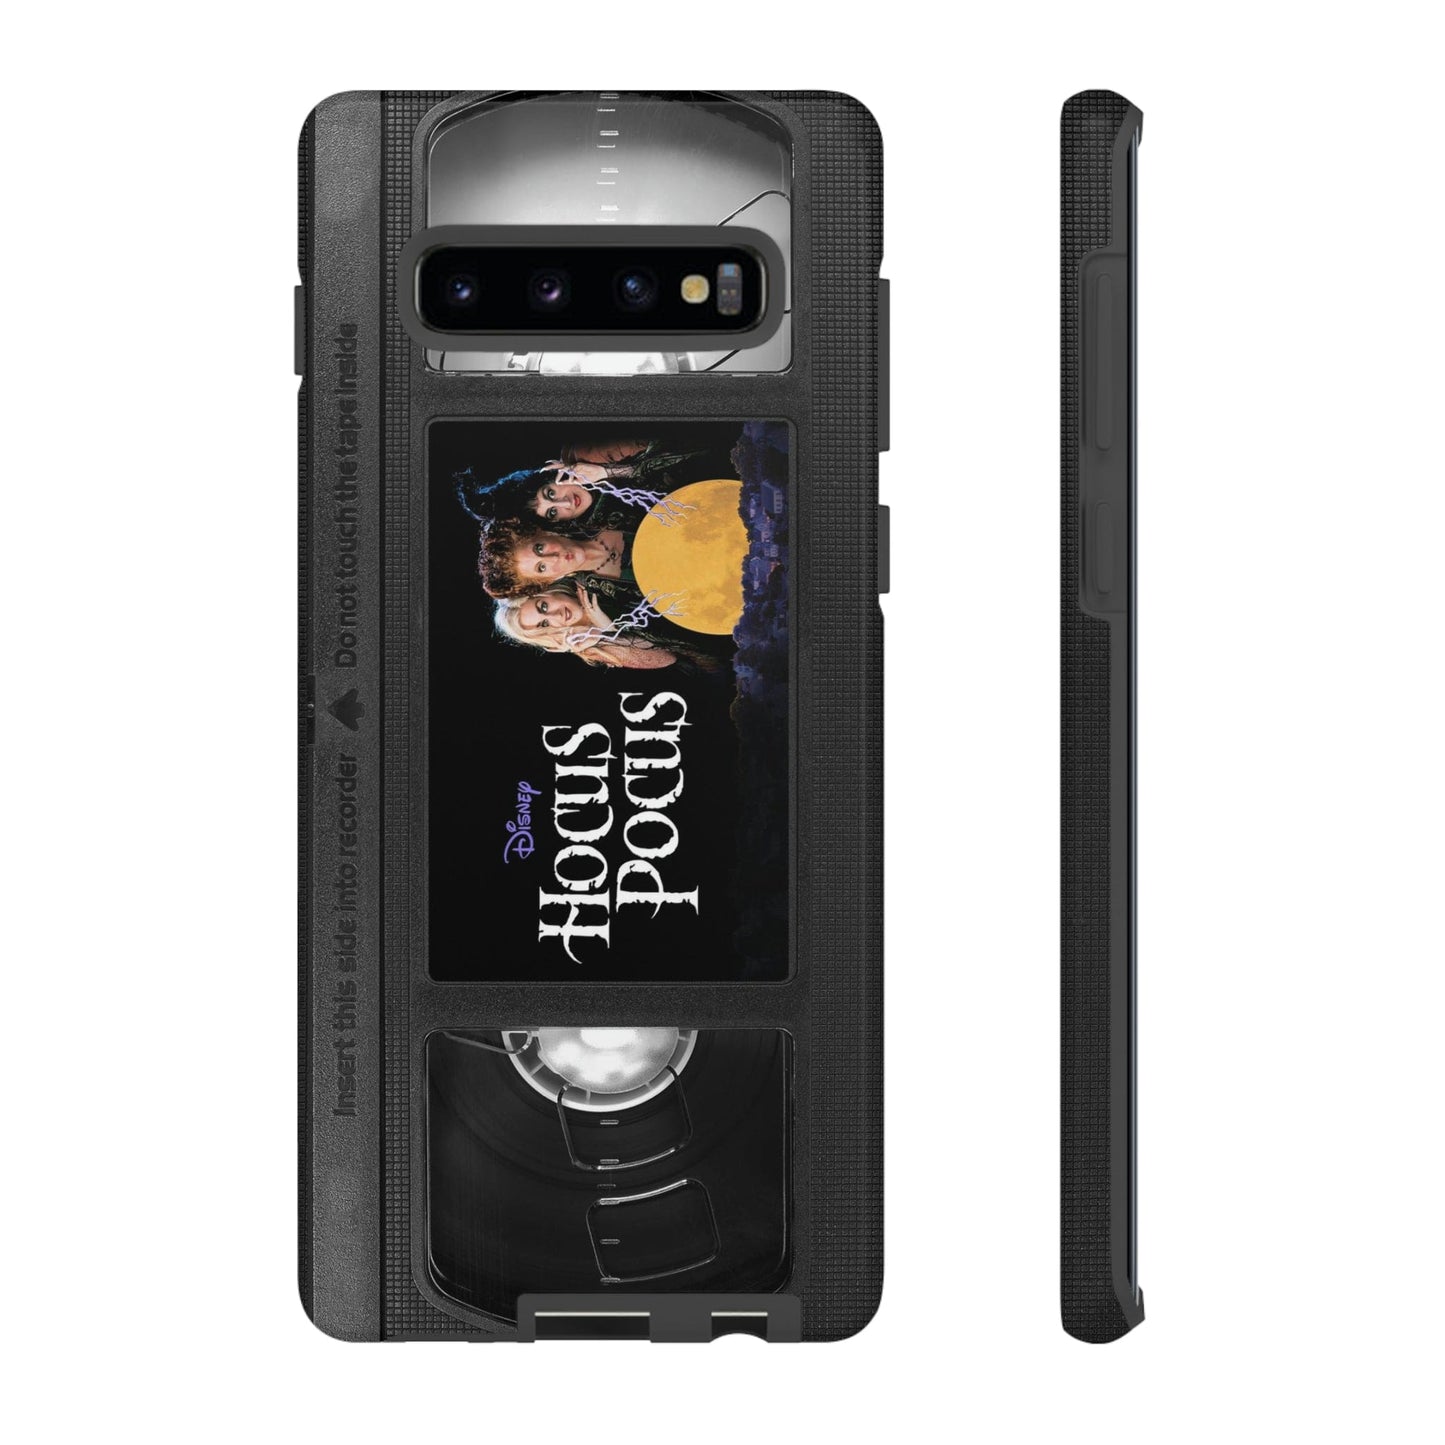 Hocus Pocus Impact Resistant VHS Phone Case